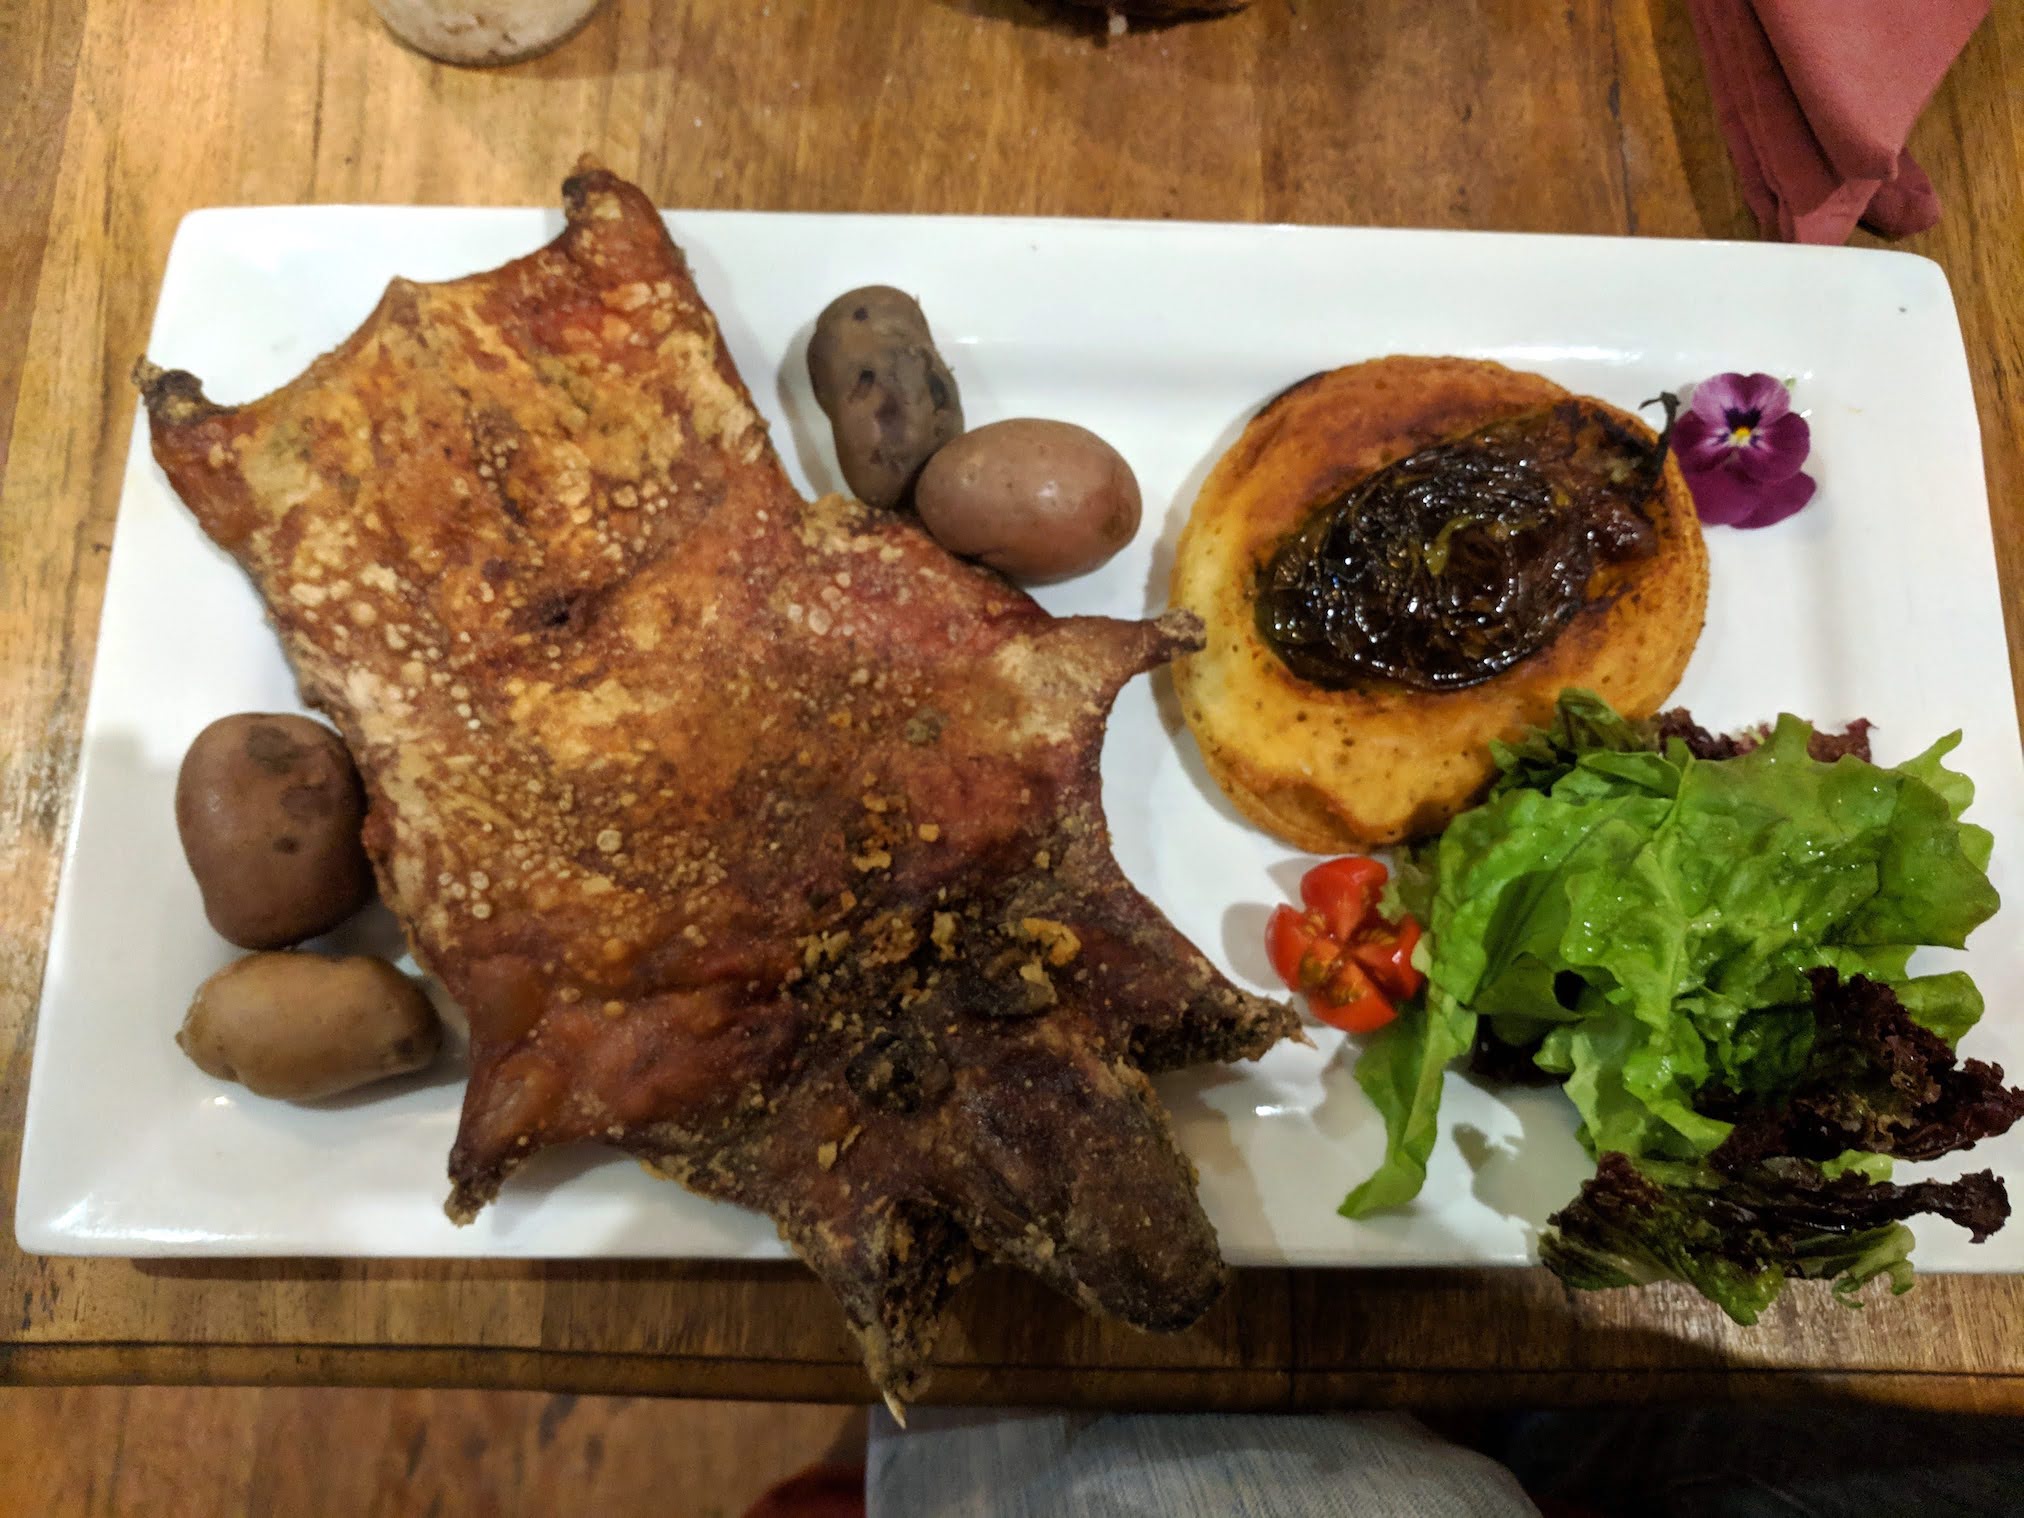 Guinea pig dinner in Peru